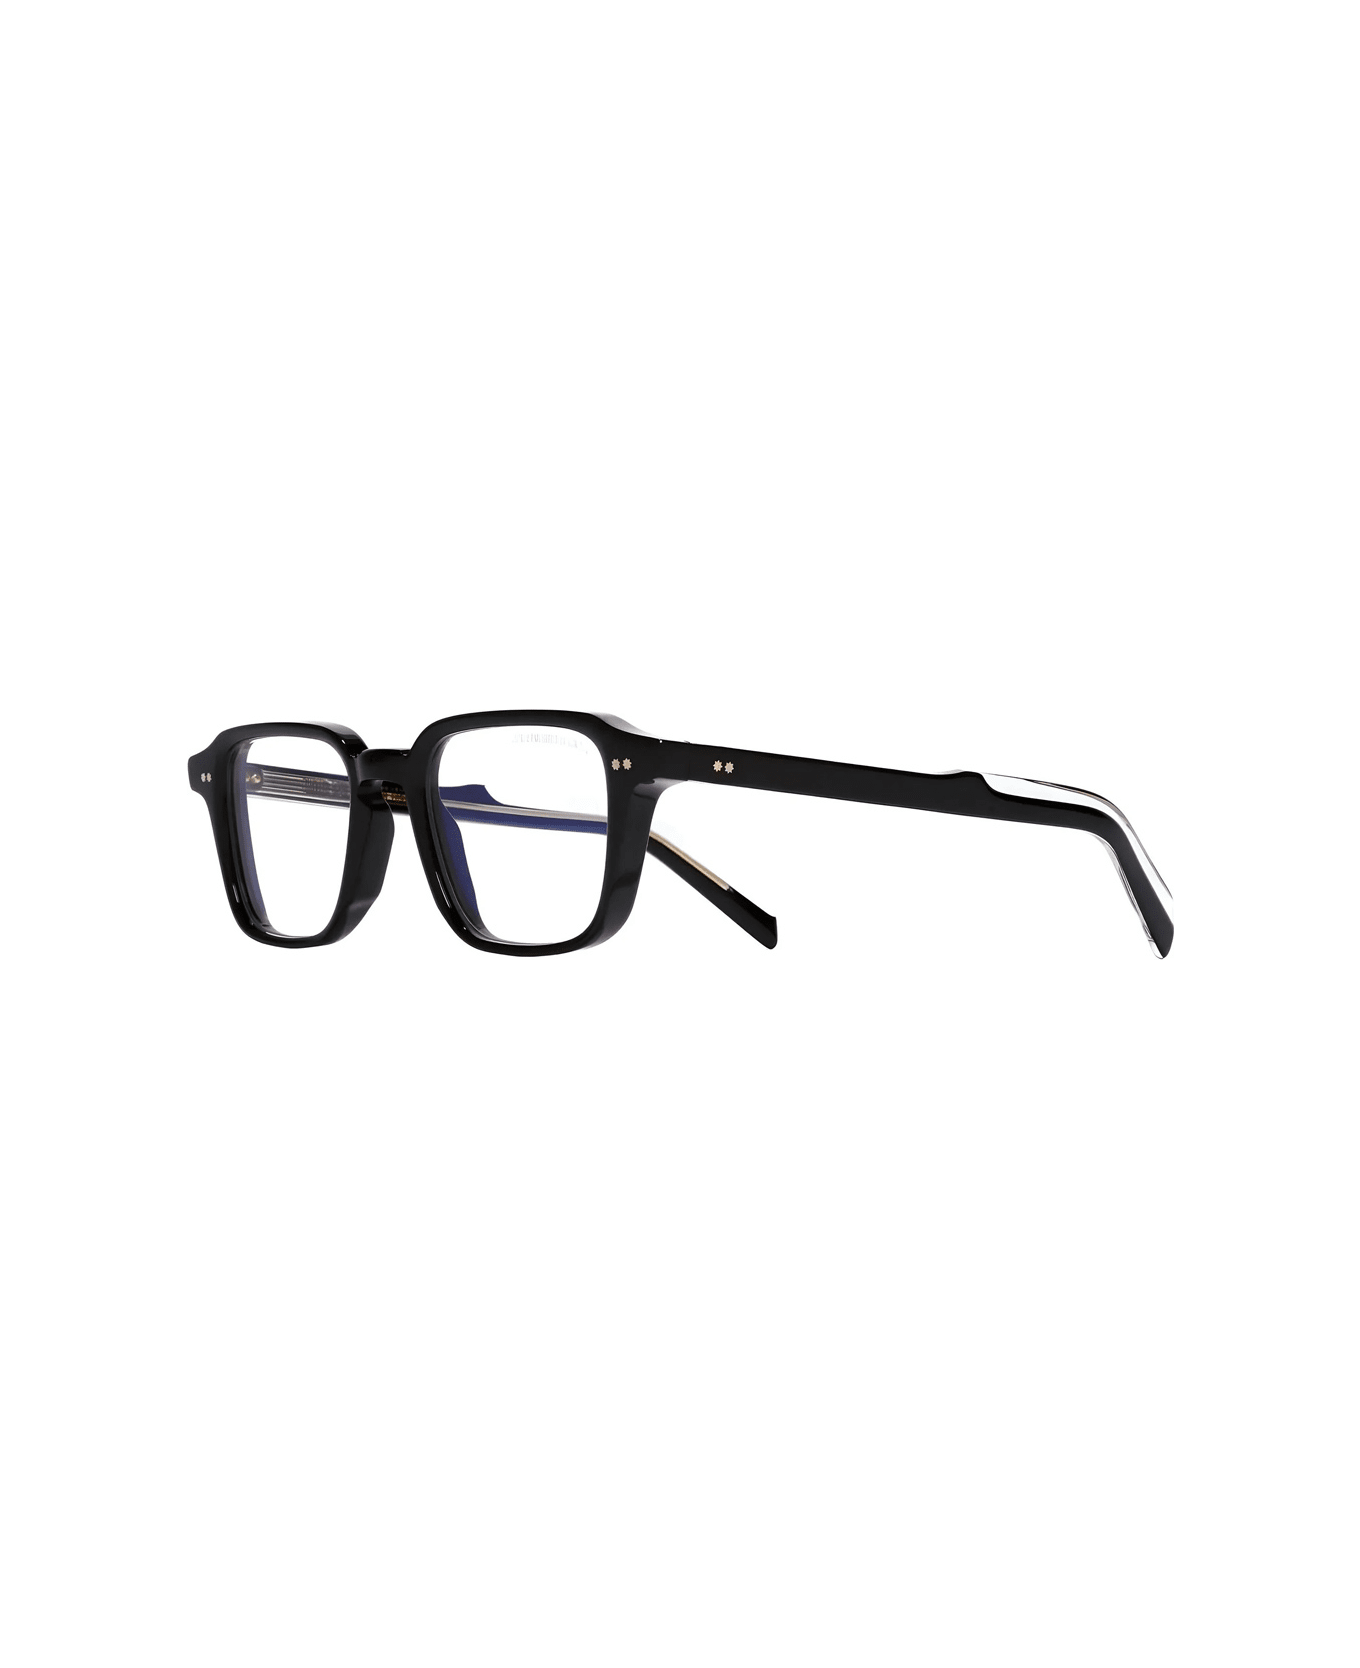 Cutler and Gross Gr07 01 Black Glasses - Nero アイウェア